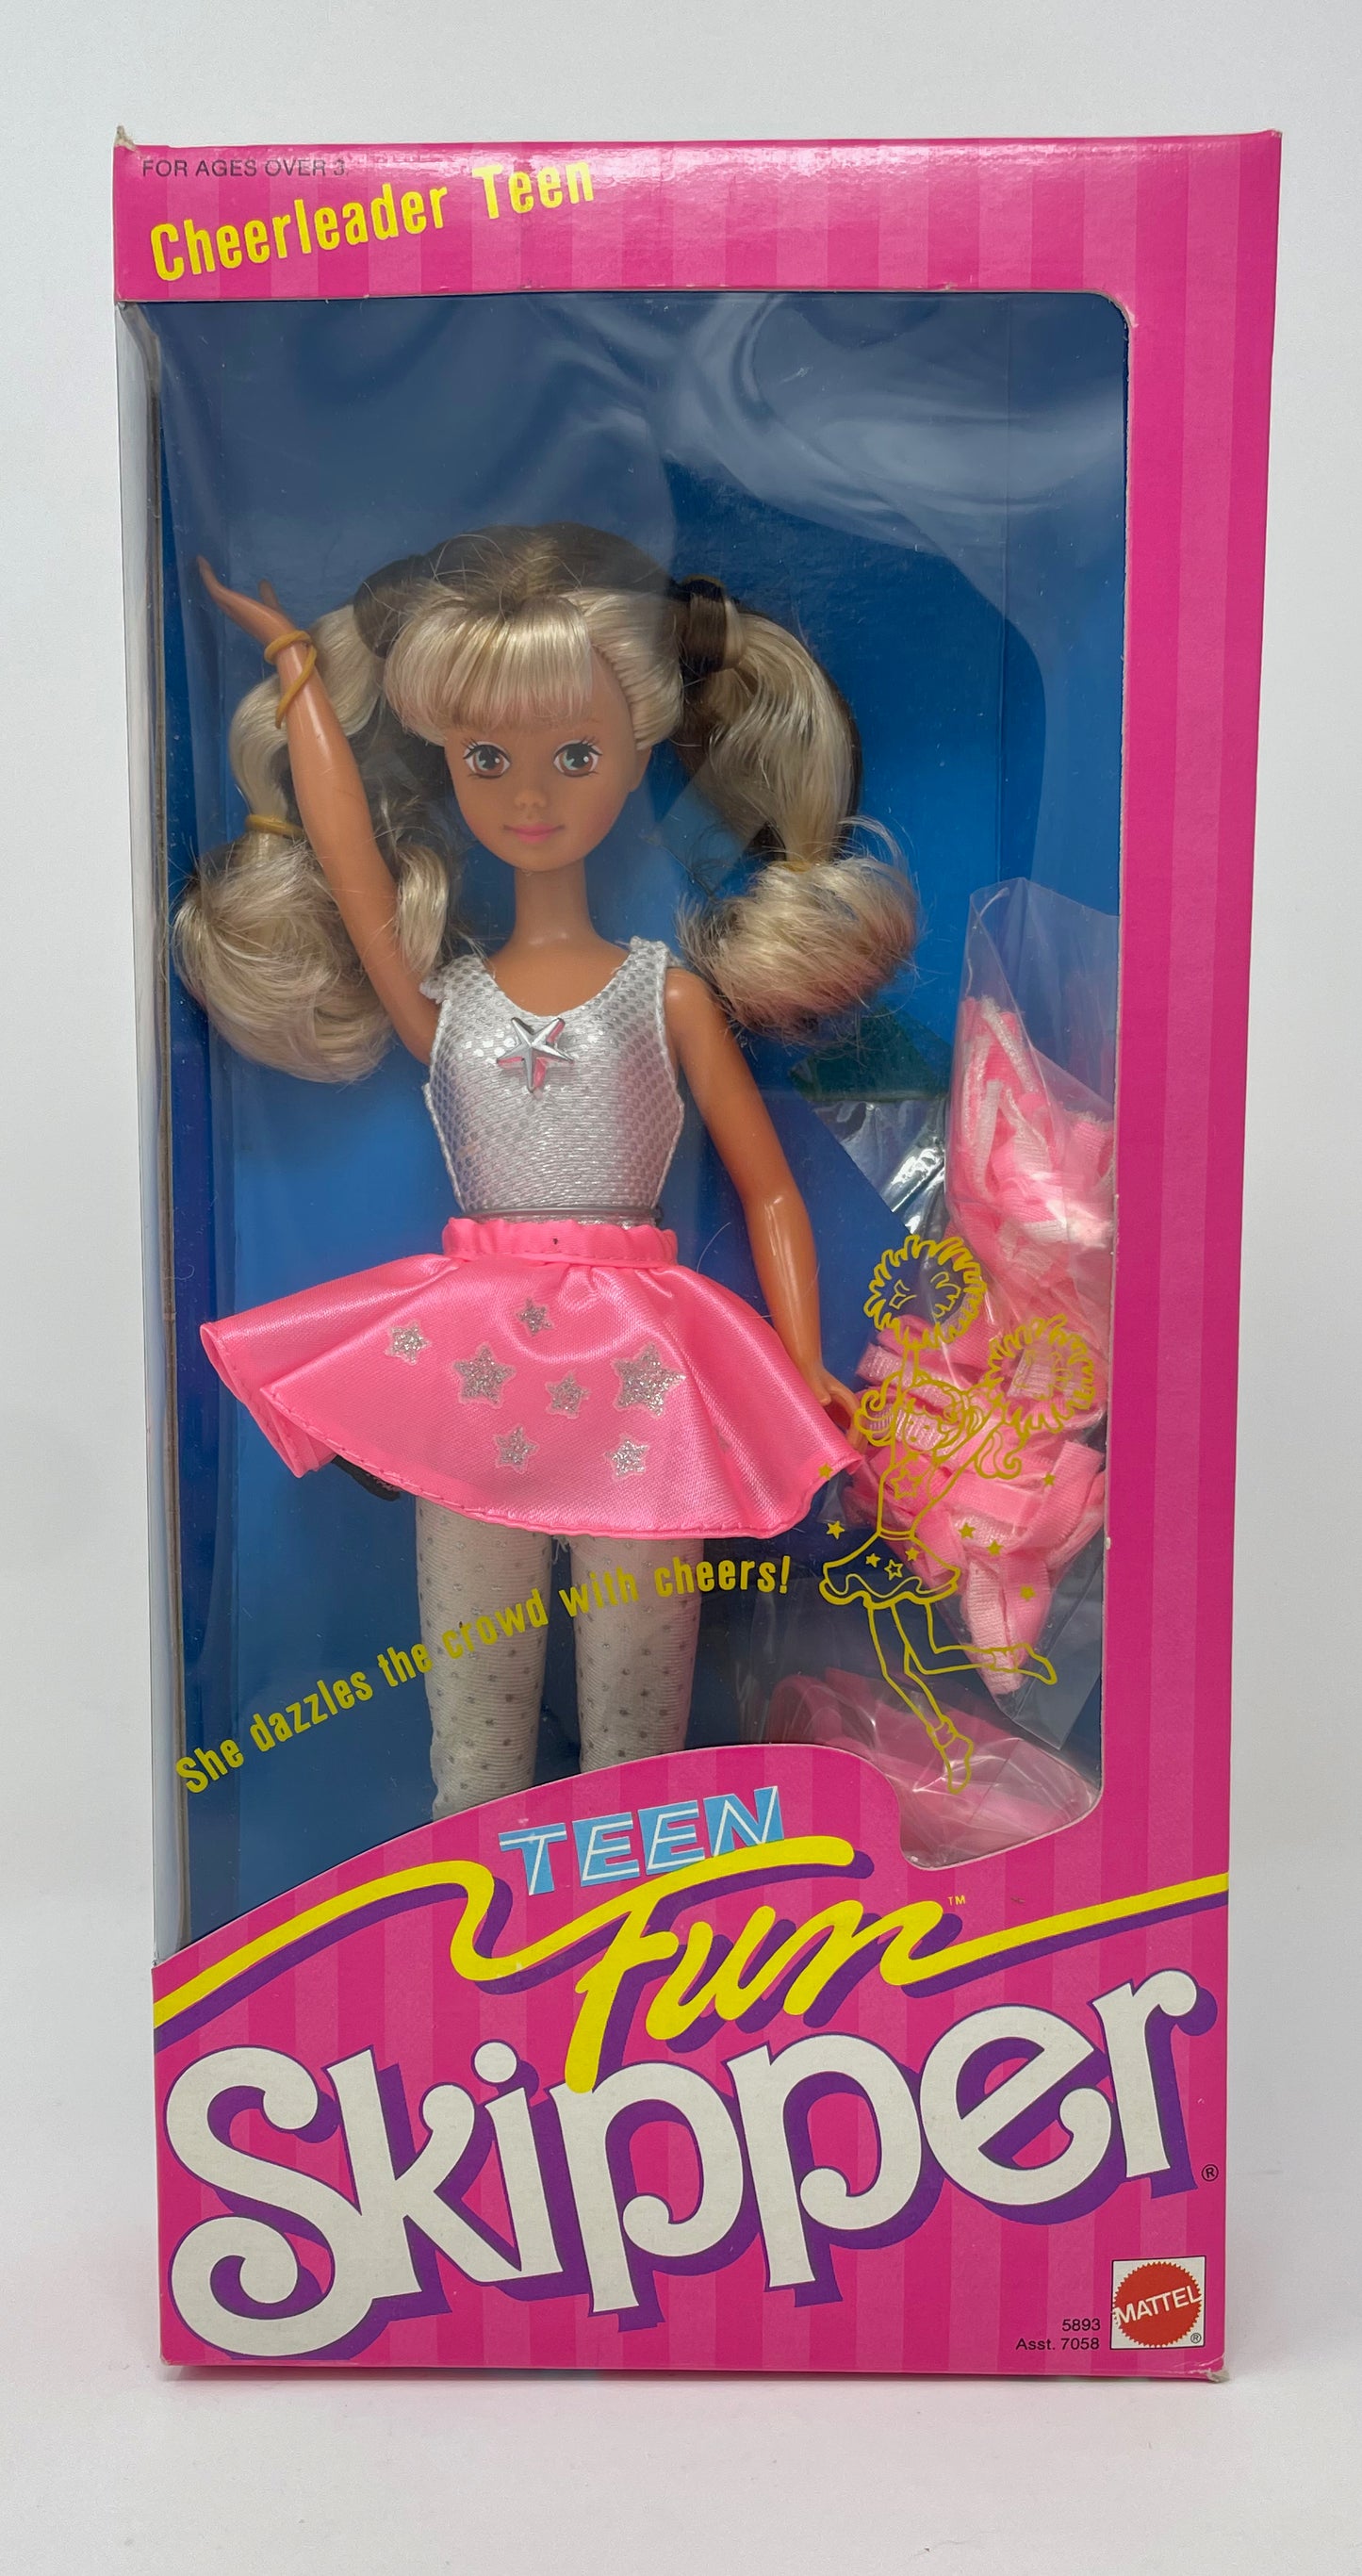 Barbie - boutique creation, poupees